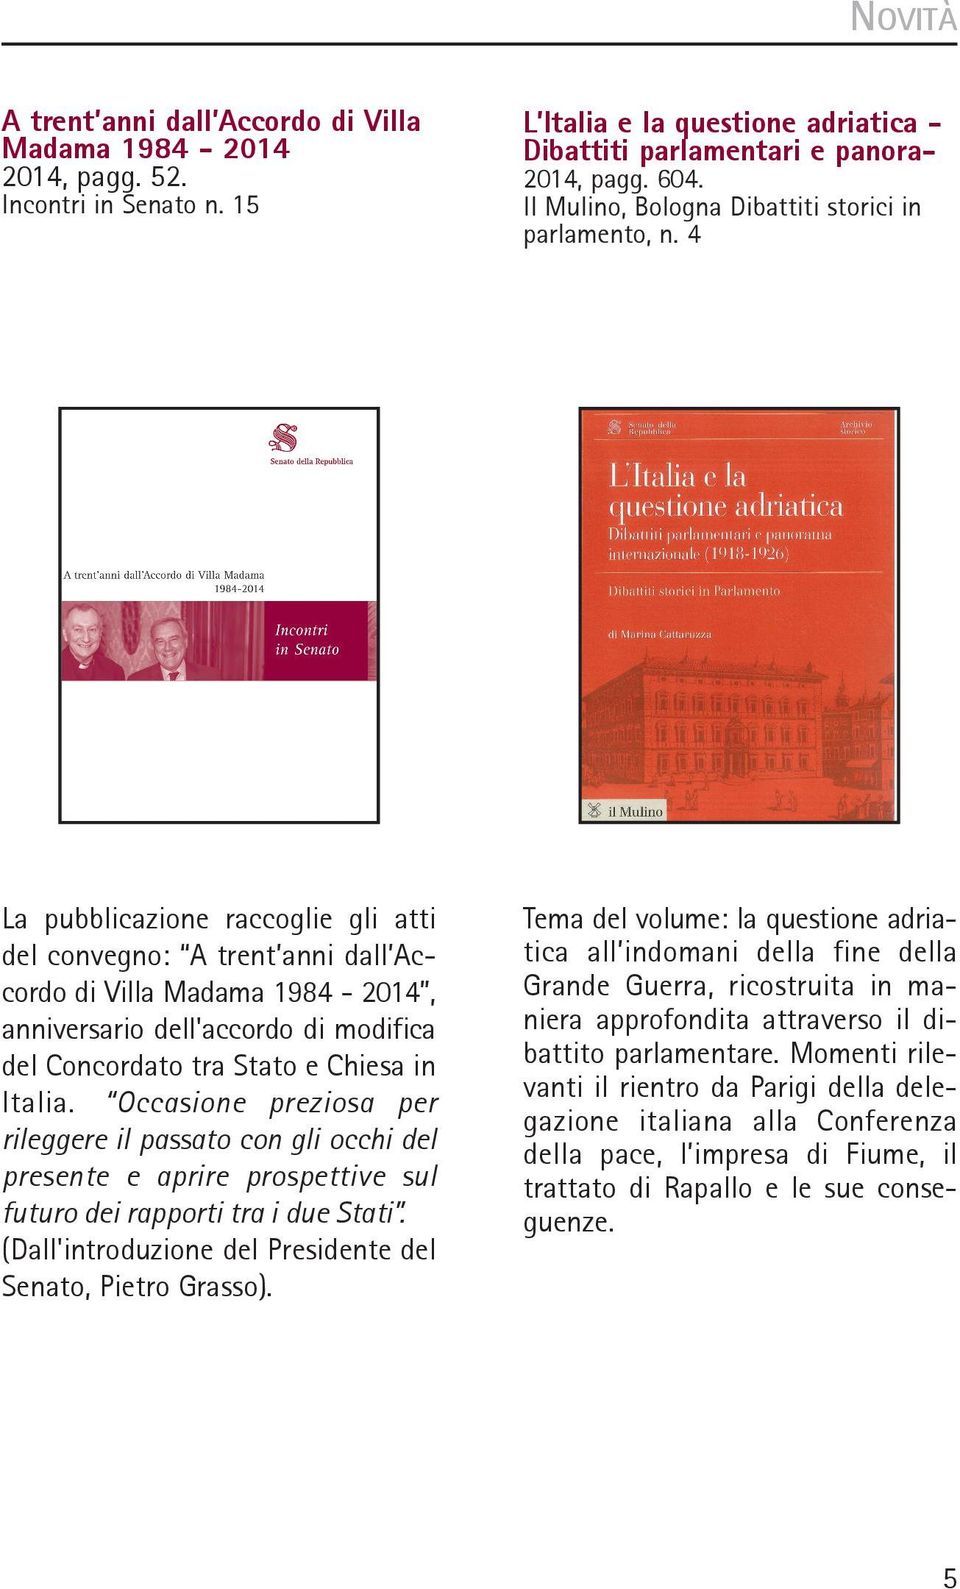 4 La pubblicazione raccoglie gli atti del convegno: A trent anni dall Accordo di Villa Madama 1984-2014, anniversario dell'accordo di modifica del Concordato tra Stato e Chiesa in Italia.